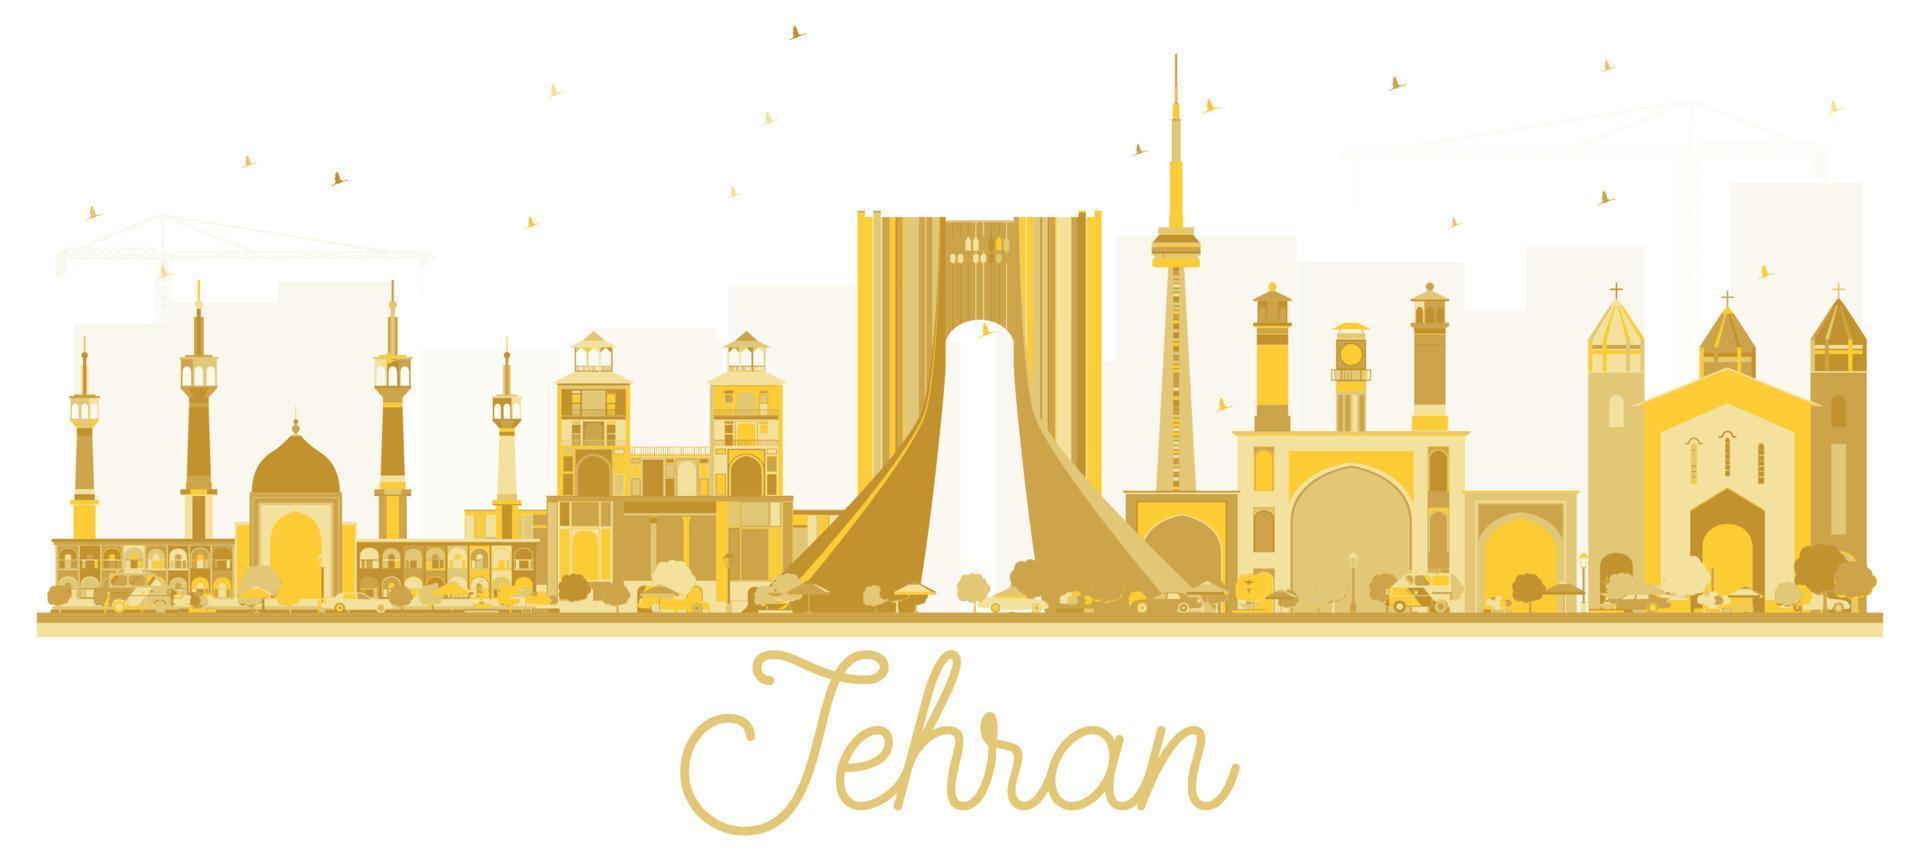 Teheran ik rende stad horizon gouden silhouet. vector